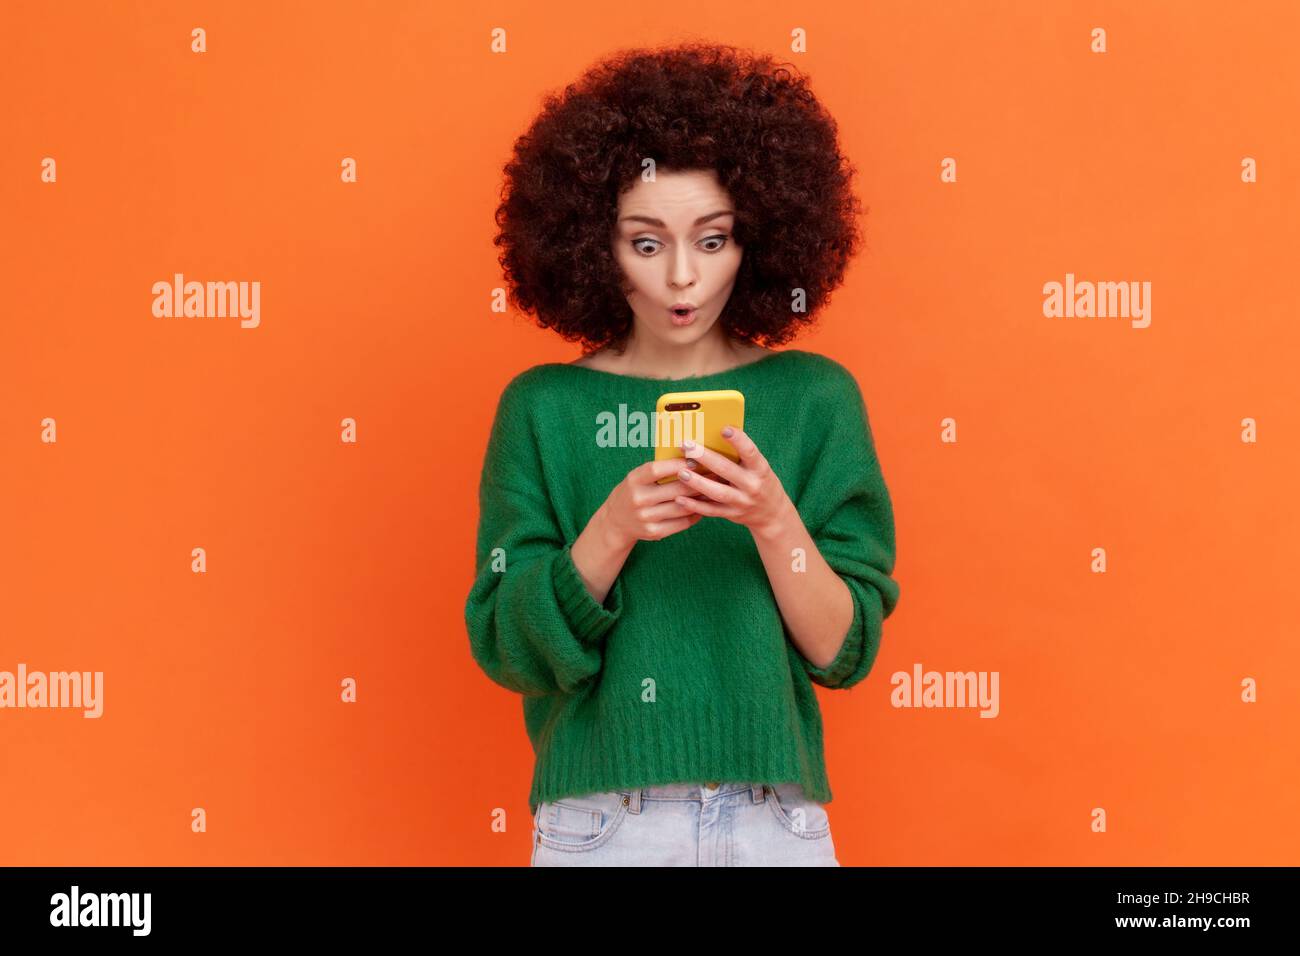 Schockierte Frau mit Afro-Frisur, die einen grünen Pullover im lässigen Stil trägt, der mit offenem Mund steht, ein Handy benutzt und erstaunliche Nachrichten in E-Mails liest. Innenaufnahme des Studios isoliert auf orangefarbenem Hintergrund. Stockfoto